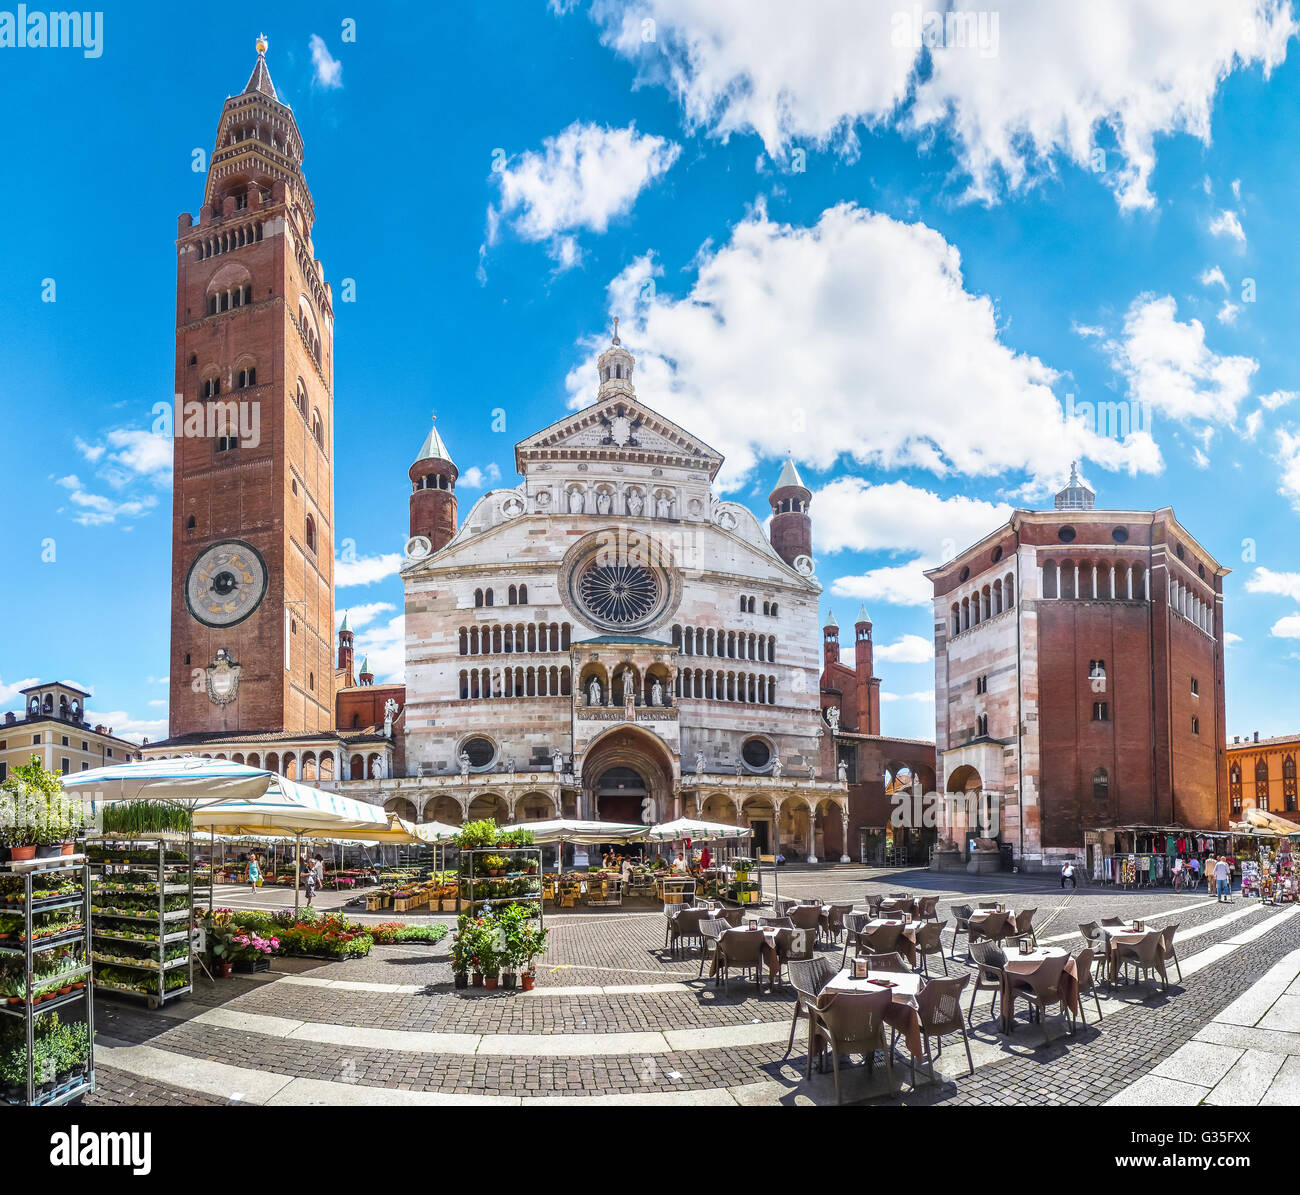 La antigua Catedral de Cremona con el famoso campanario Torrazzo y el baptisterio en la hermosa plaza del mercado Piazza Duomo de Cremona, Foto de stock